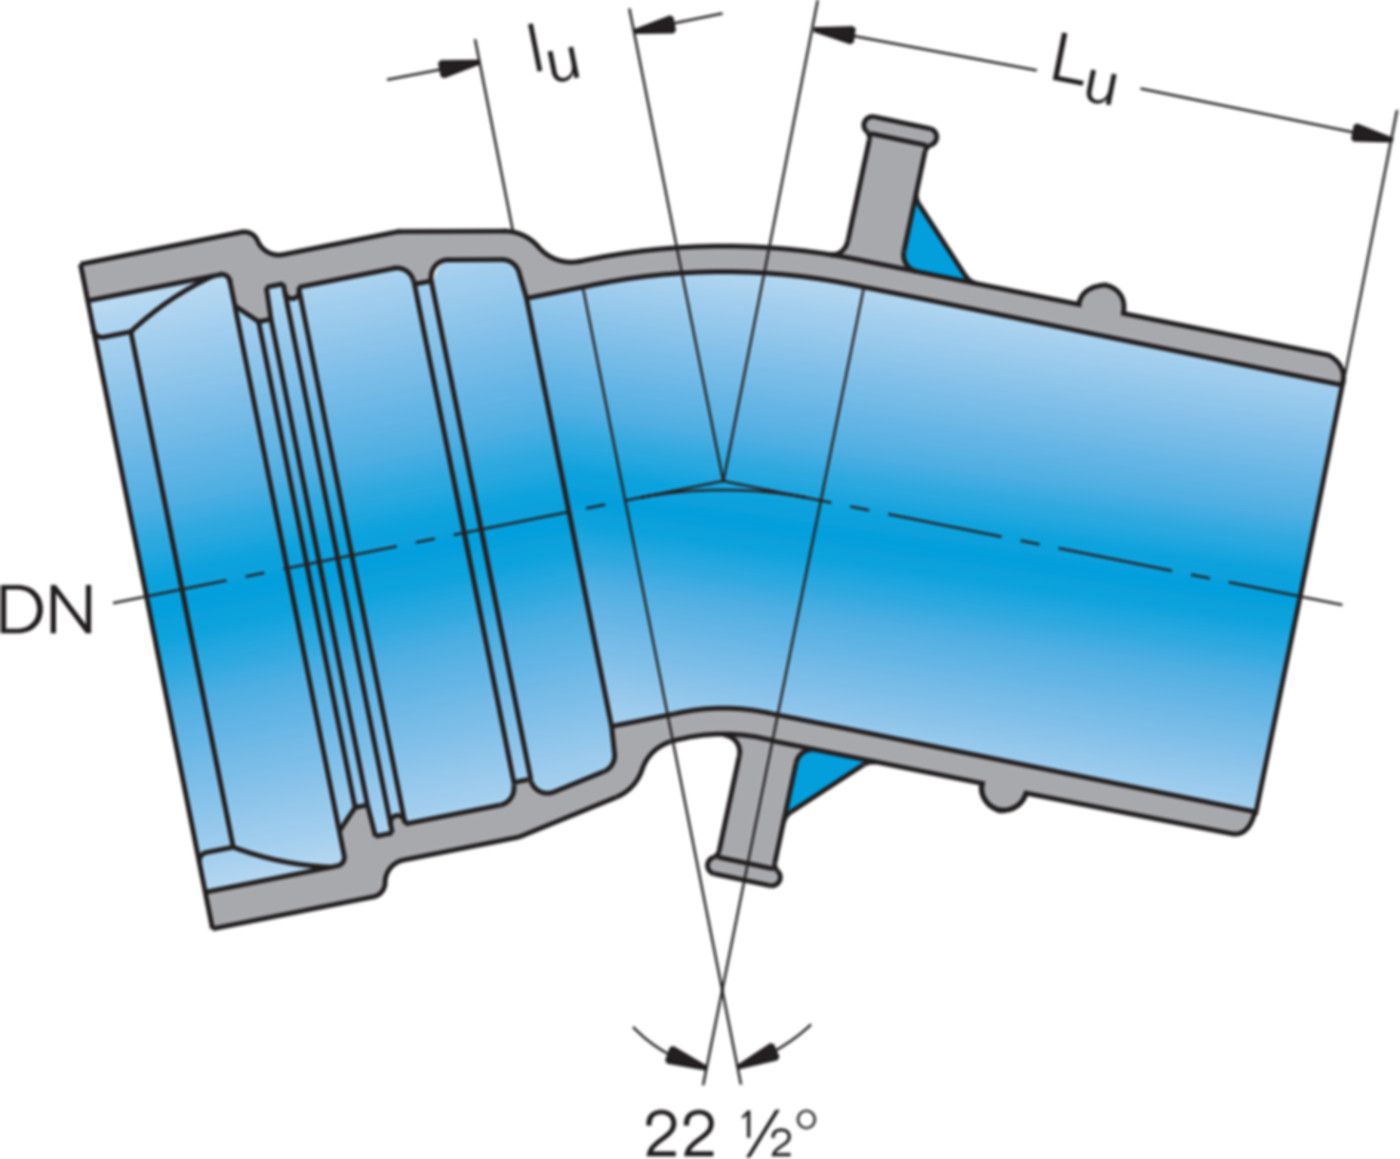 1-Muffe-Bogen MK 22° System BLS DN 125 - Frischhut Steckmuffenformstücke